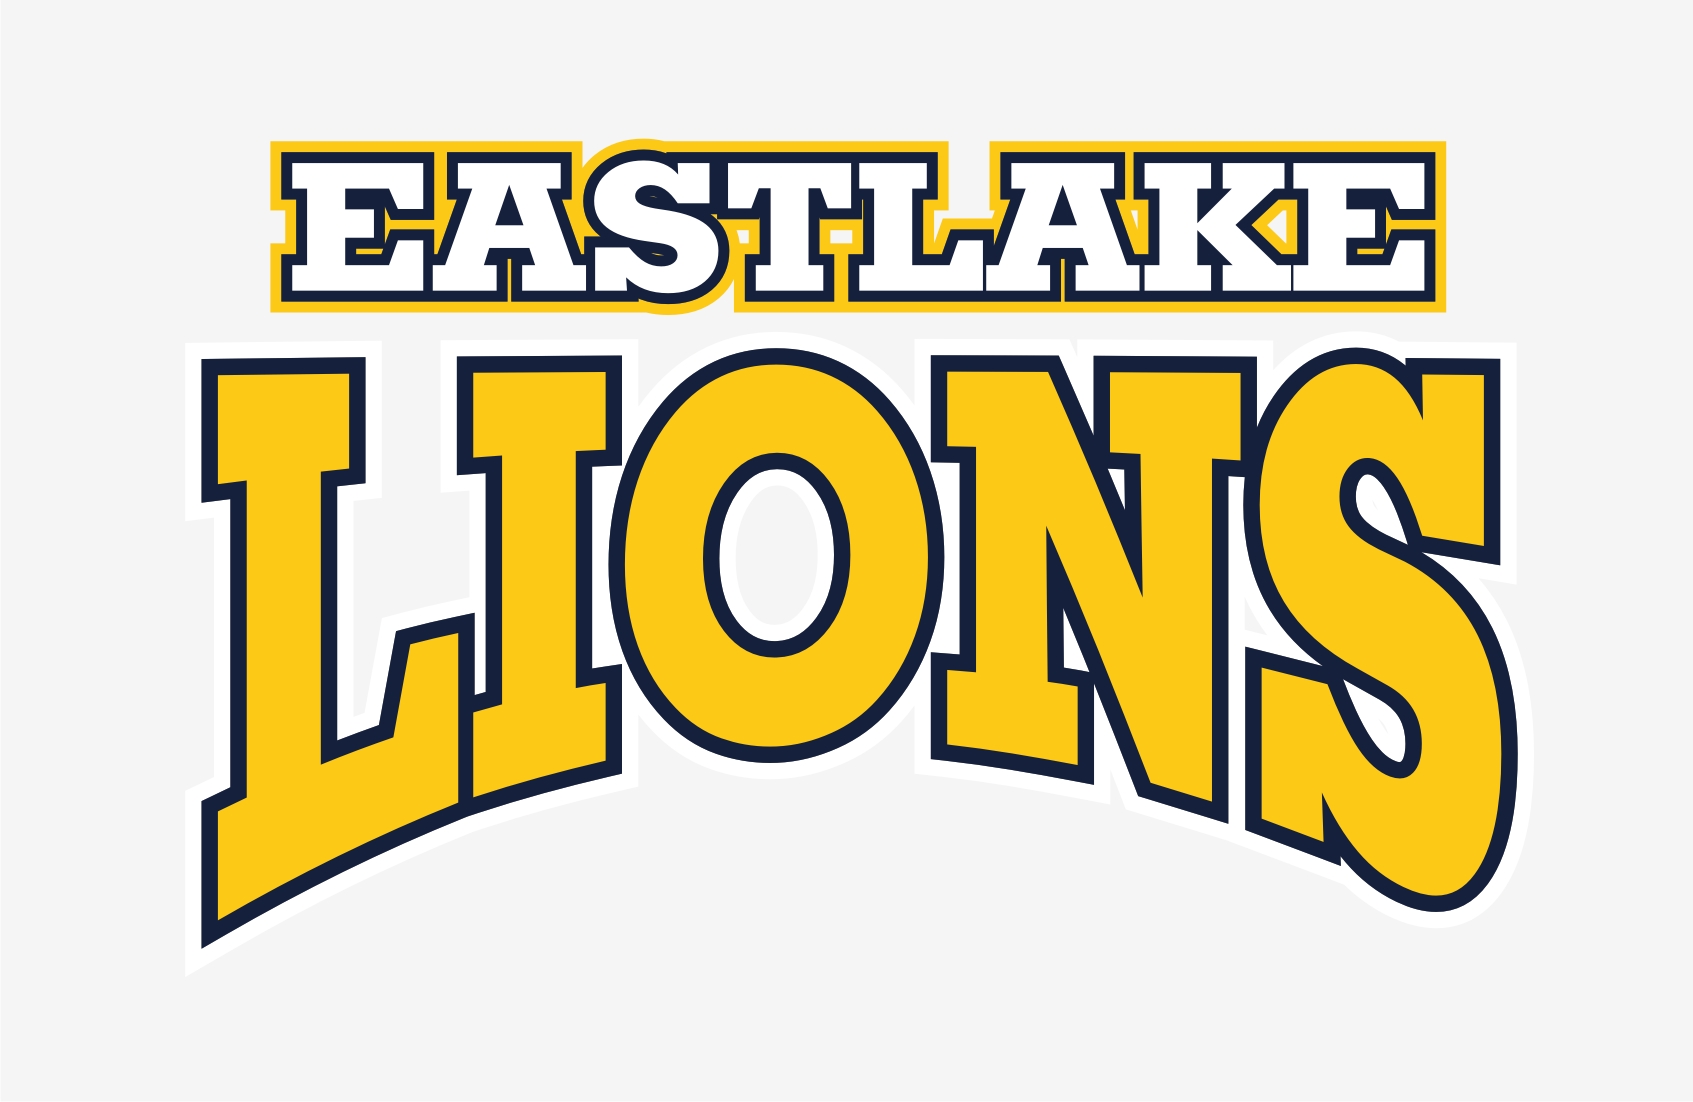 Eastlake Lions